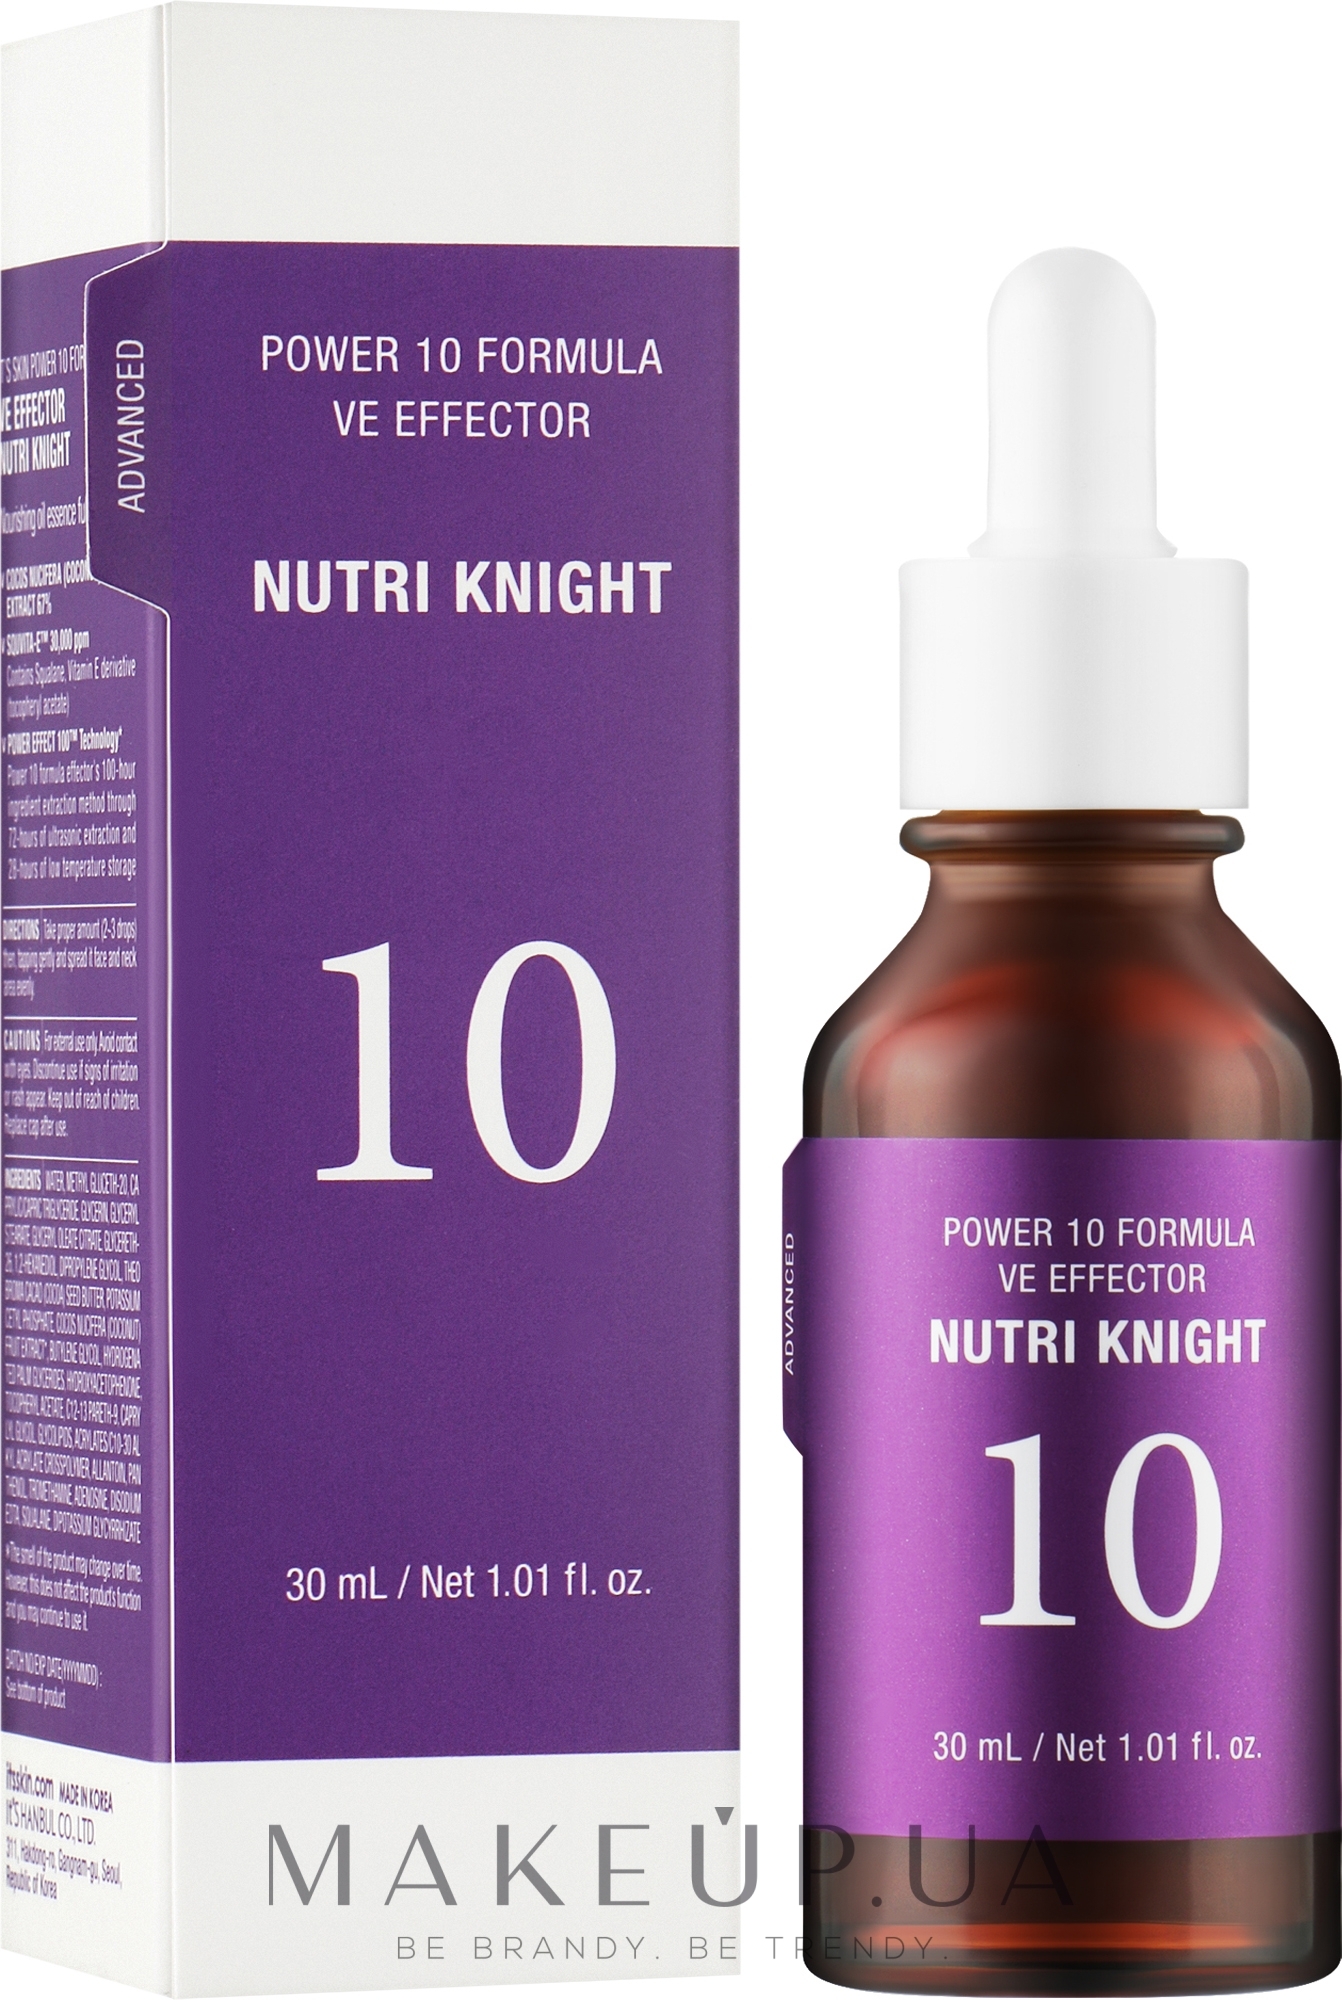 Питательная лифтинг-сыворотка - It's Skin Power 10 Formula VE Effector Nutri Knight — фото 30ml